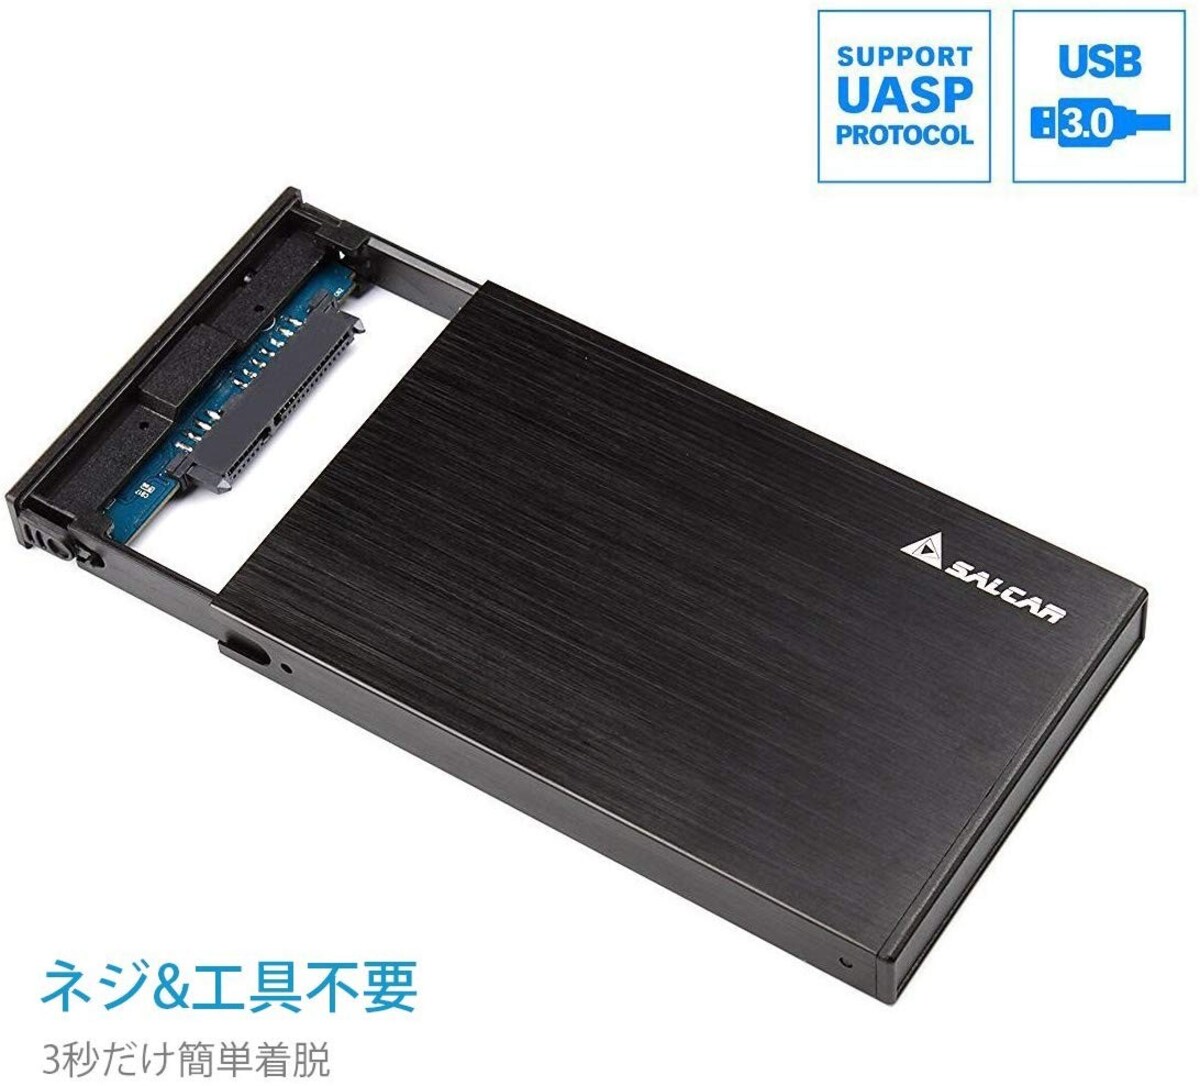  2.5インチ HDD/SSDケース画像3 